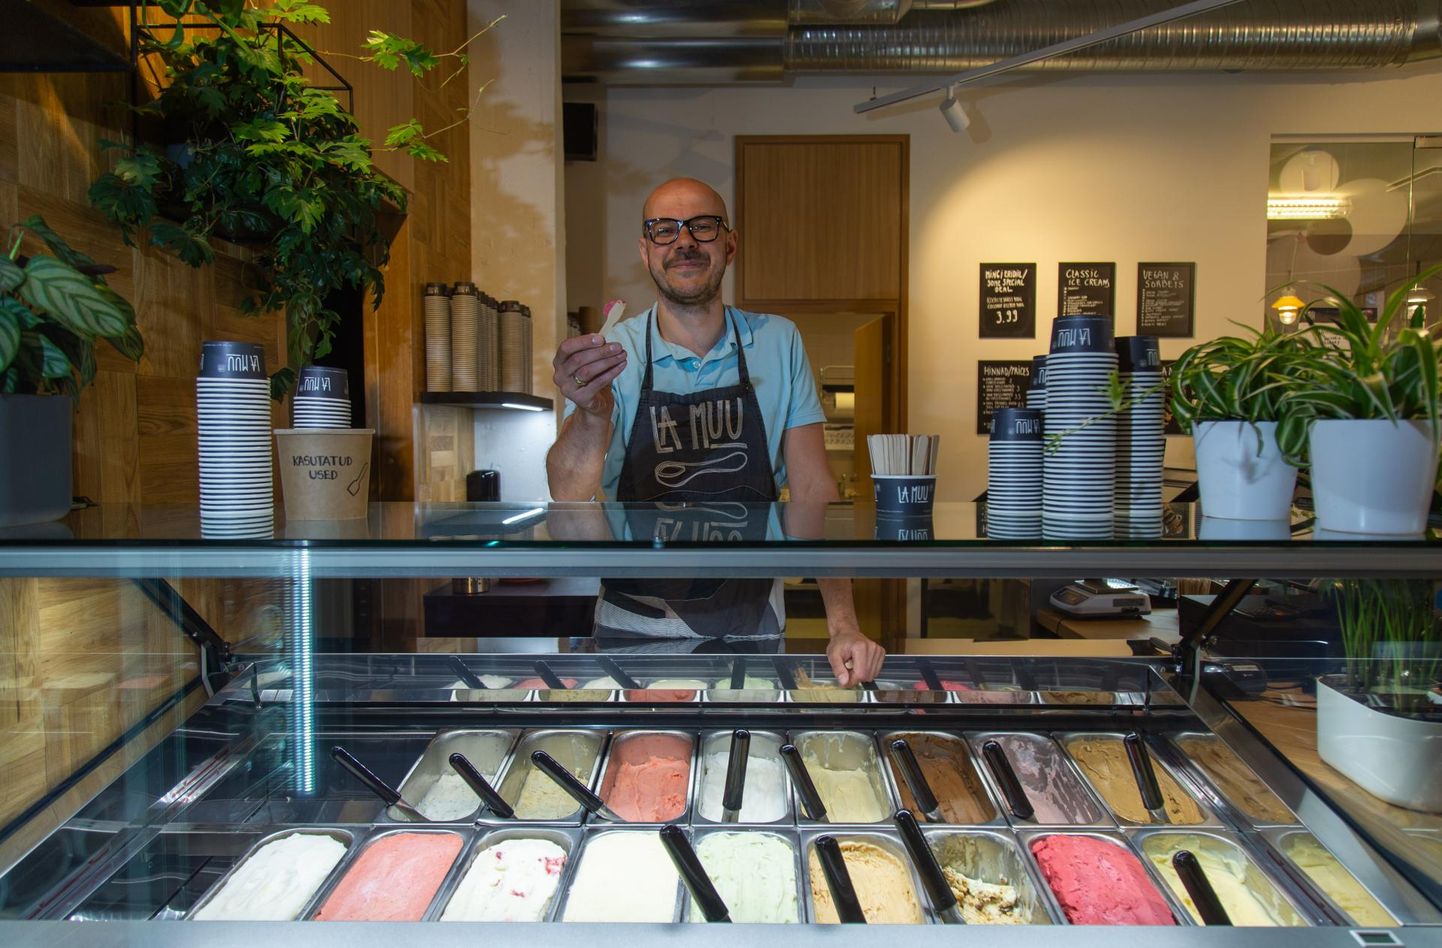 La Muu tegevjuht Rasmus Rask oma jäätisekohviku leti taga. Maitsmiseks mõeldud pulgakesel on spetsiaalselt kohviku jaoks valminud maasika-balsamico jäätis.